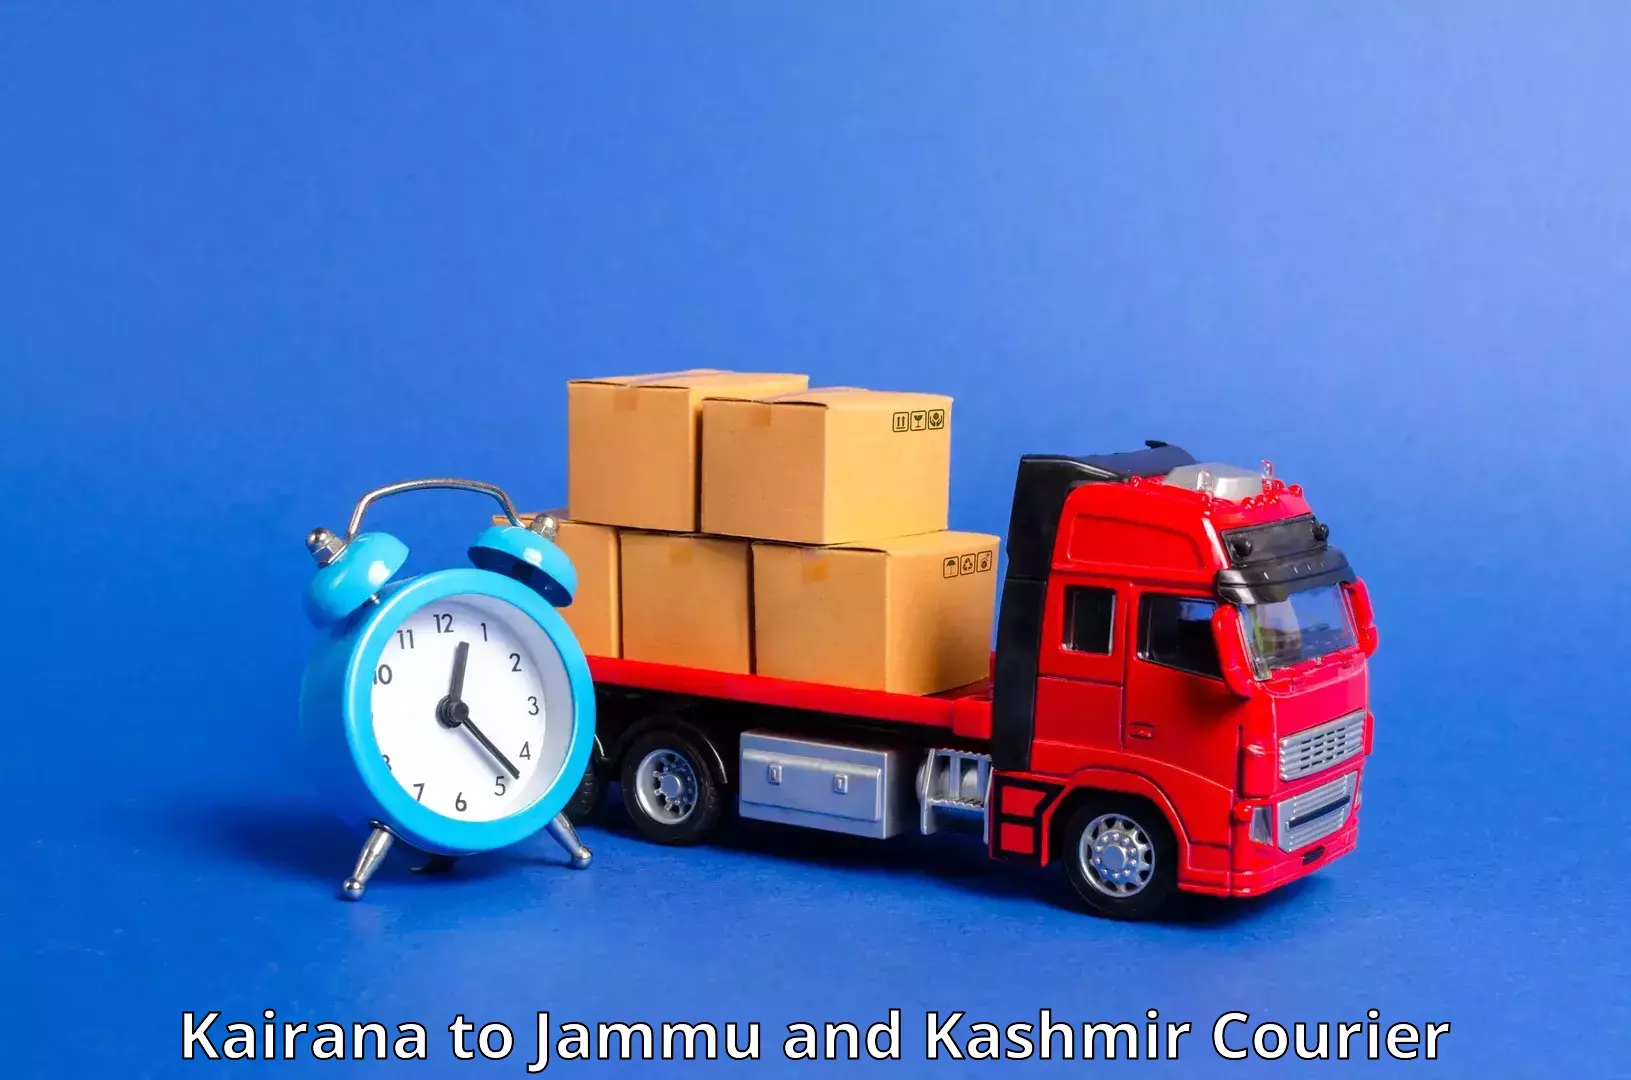 Flexible parcel services Kairana to Rajouri